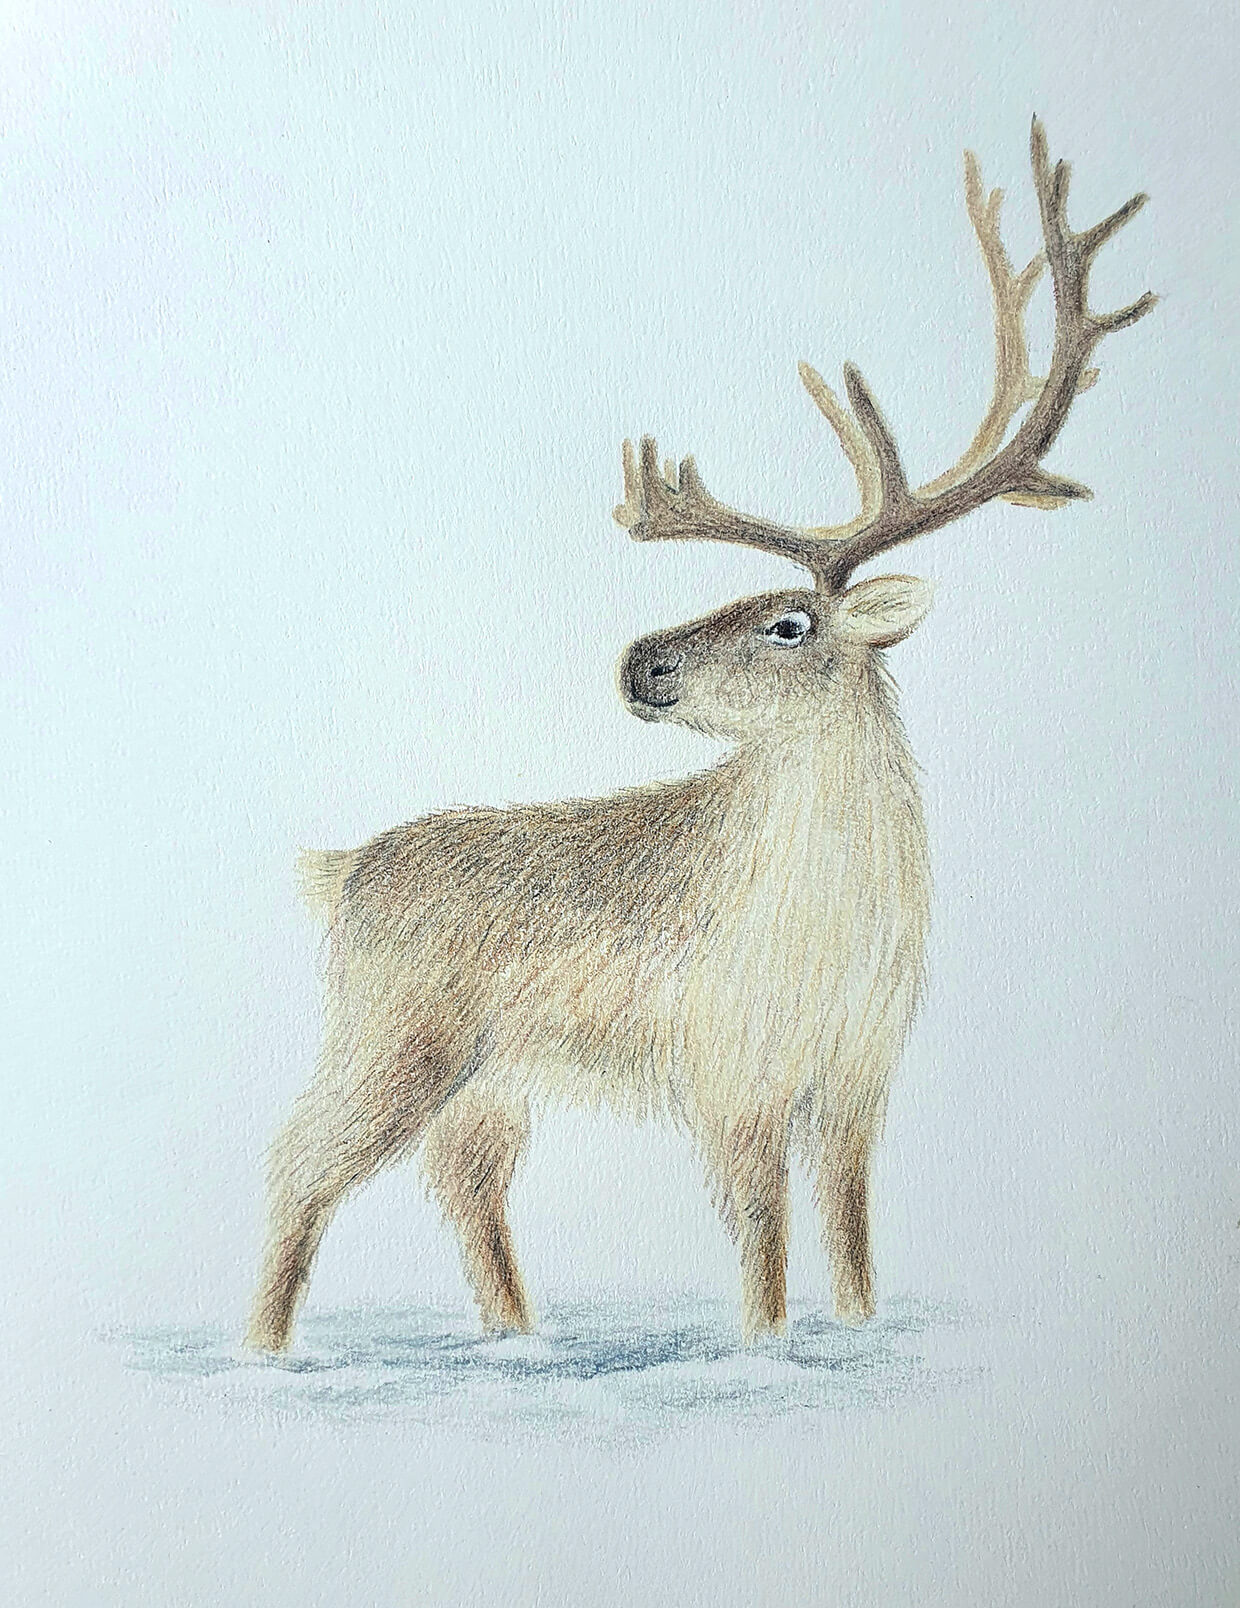 How To Draw A Deer - Colored Pencils - YouTube | Deer drawing, Raindeer  drawing, Deer painting